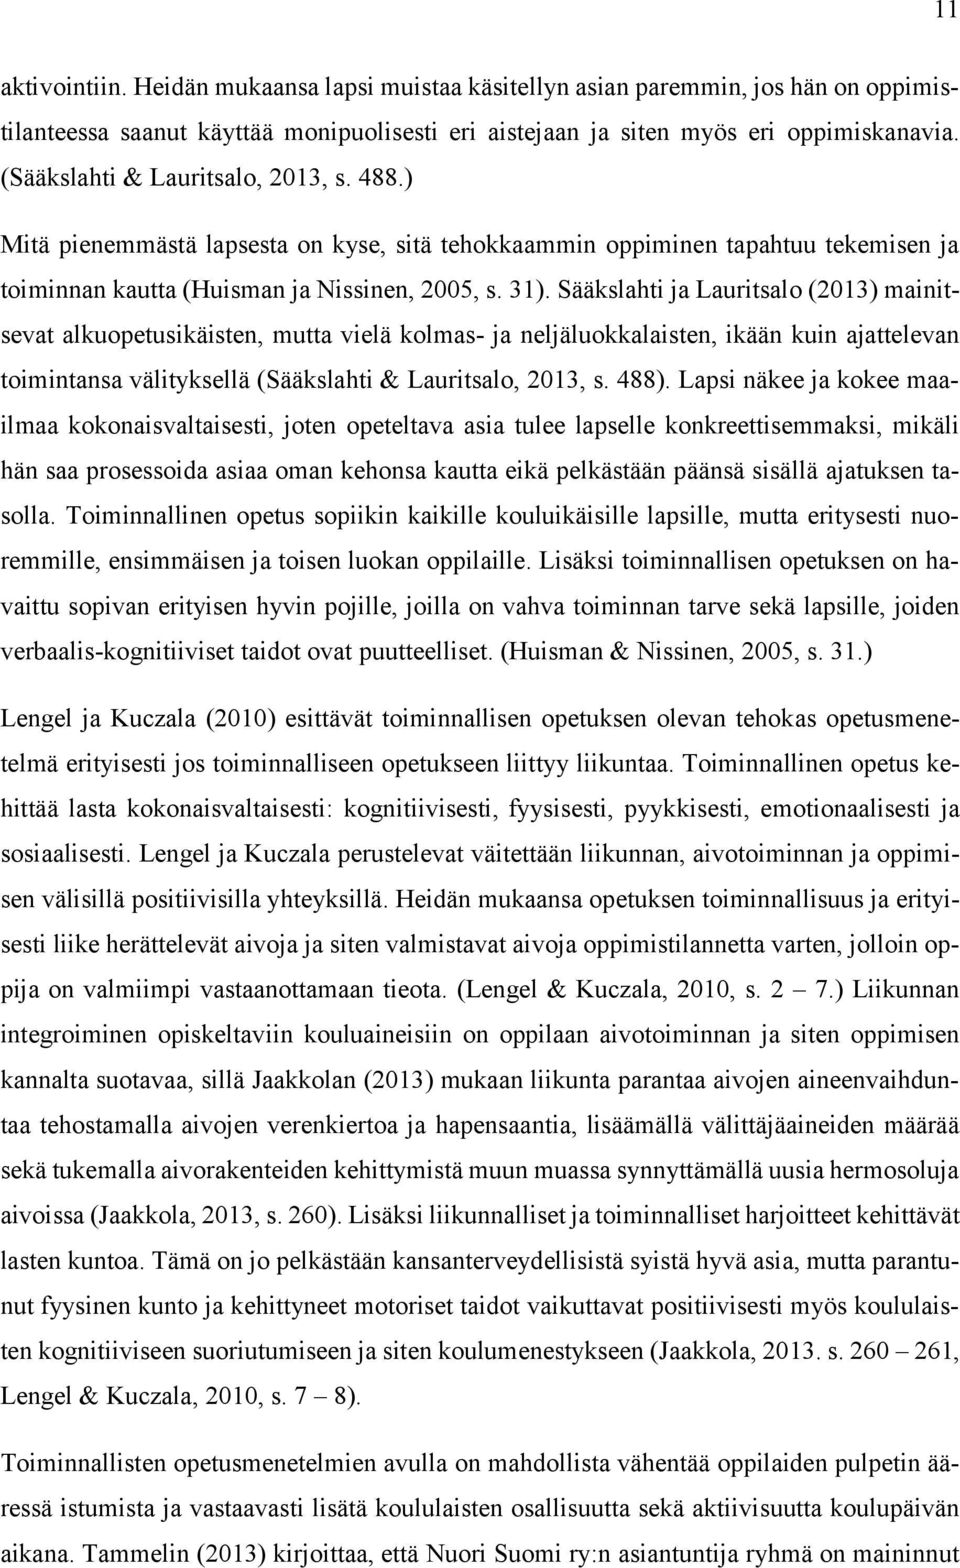 Sääkslahti ja Lauritsalo (2013) mainitsevat alkuopetusikäisten, mutta vielä kolmas- ja neljäluokkalaisten, ikään kuin ajattelevan toimintansa välityksellä (Sääkslahti & Lauritsalo, 2013, s. 488).